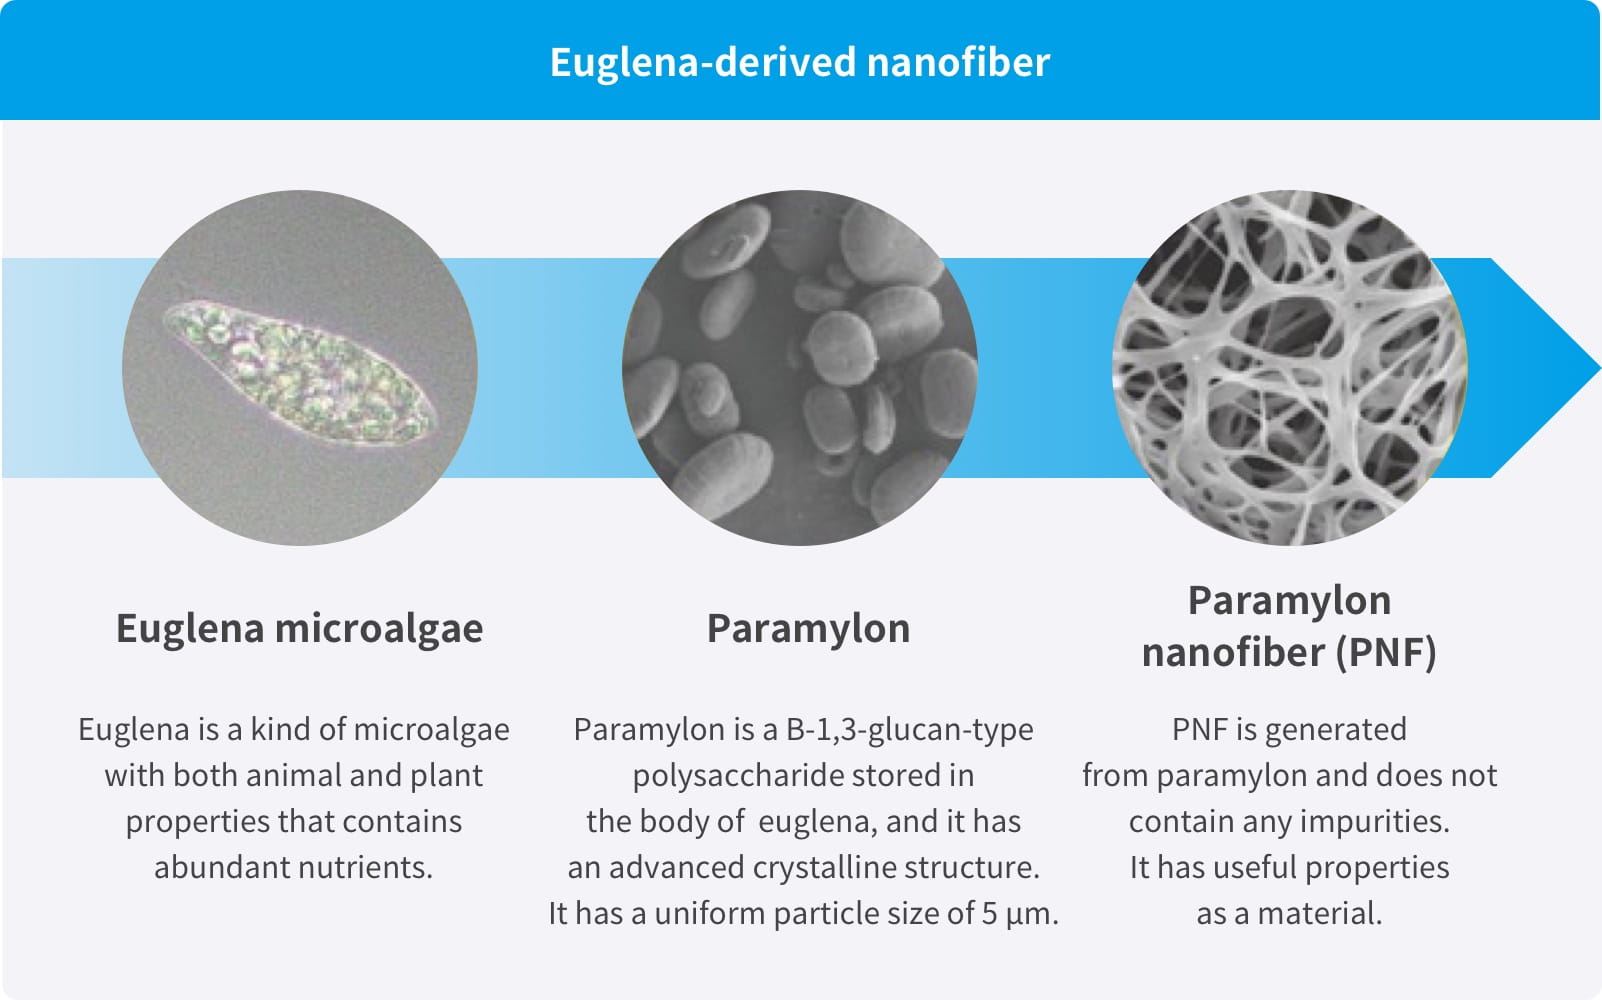 Euglena-derived nanofiber